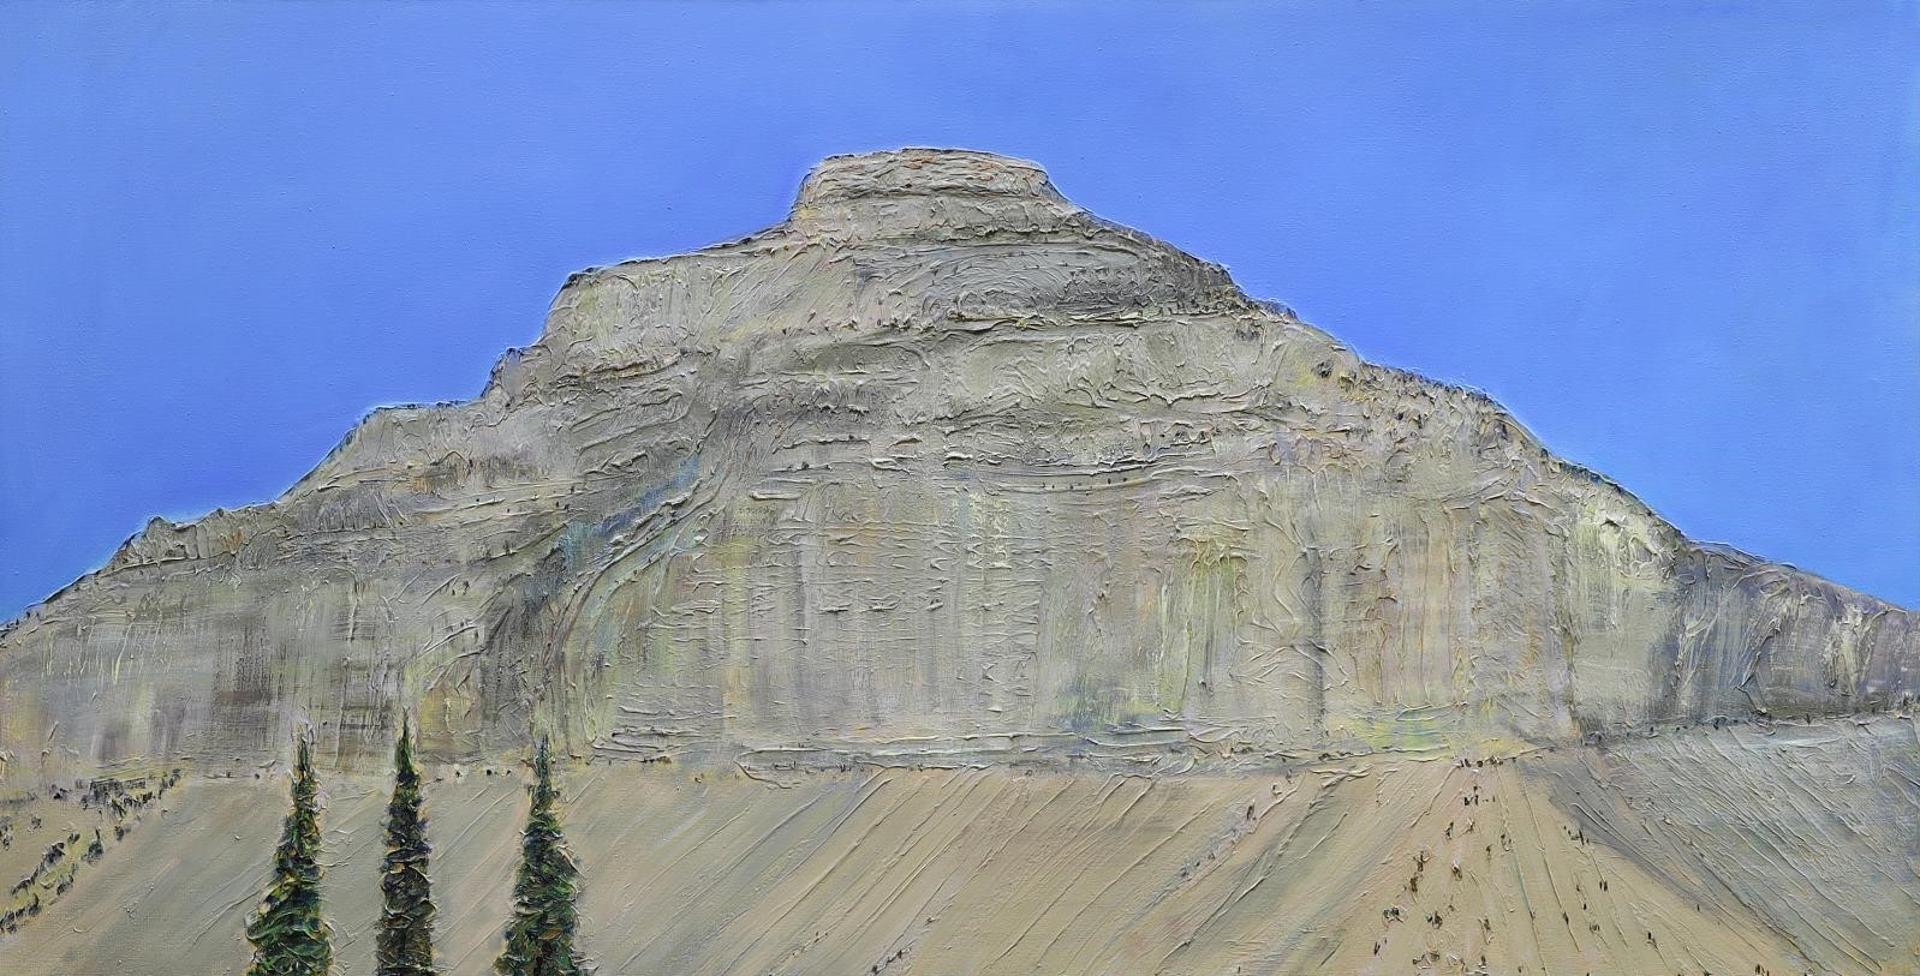 Greg Hardy (1950) - Flat Top Mountain; 1991-2